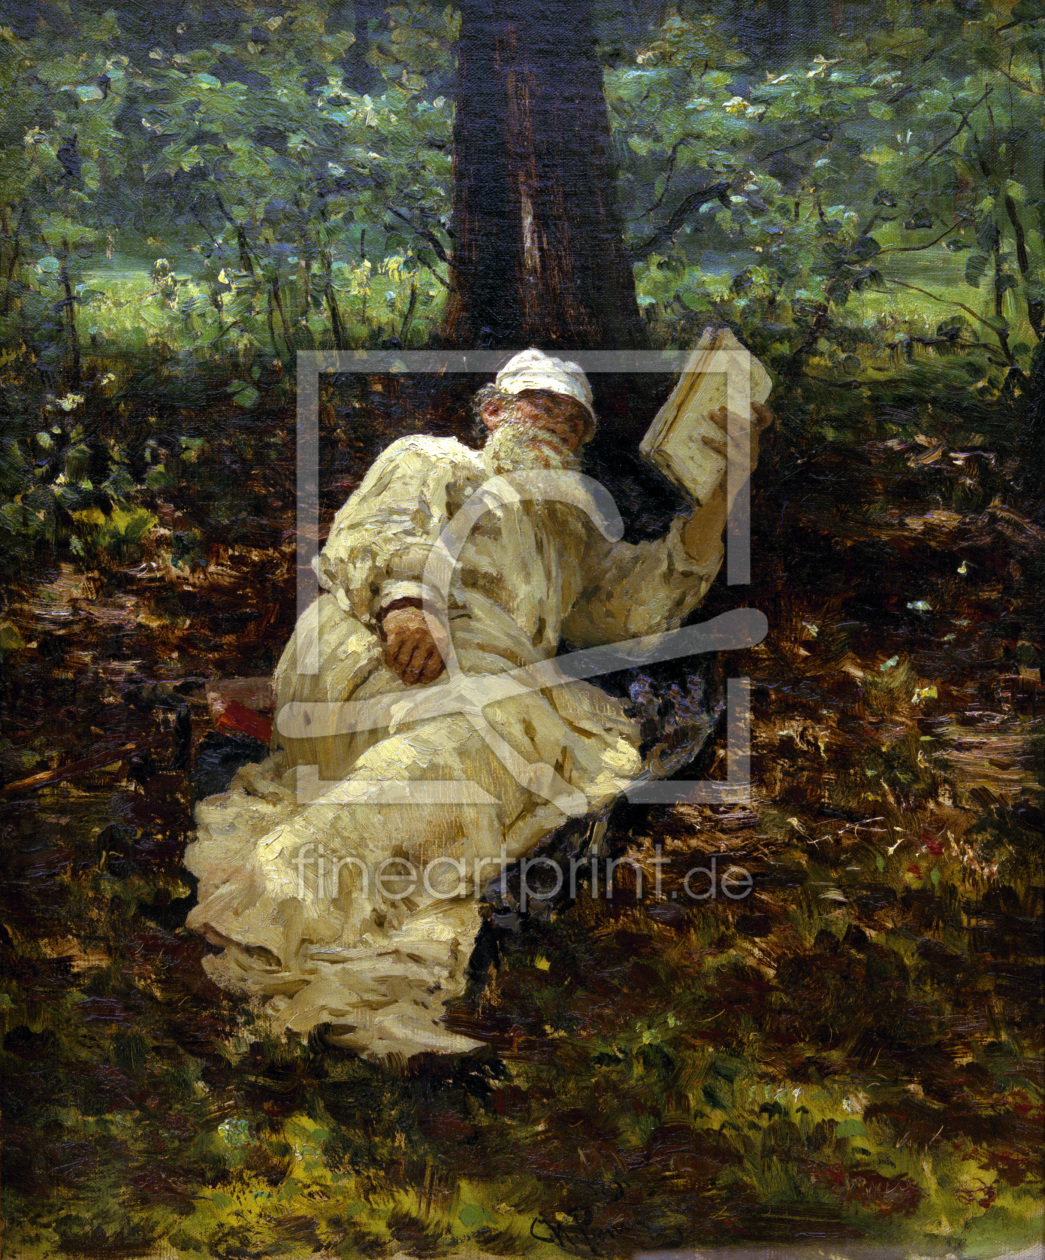 Bild-Nr.: 30006788 Leo Tolstoy / Painting by Repin erstellt von Repin, Ilja Jefimowitsch